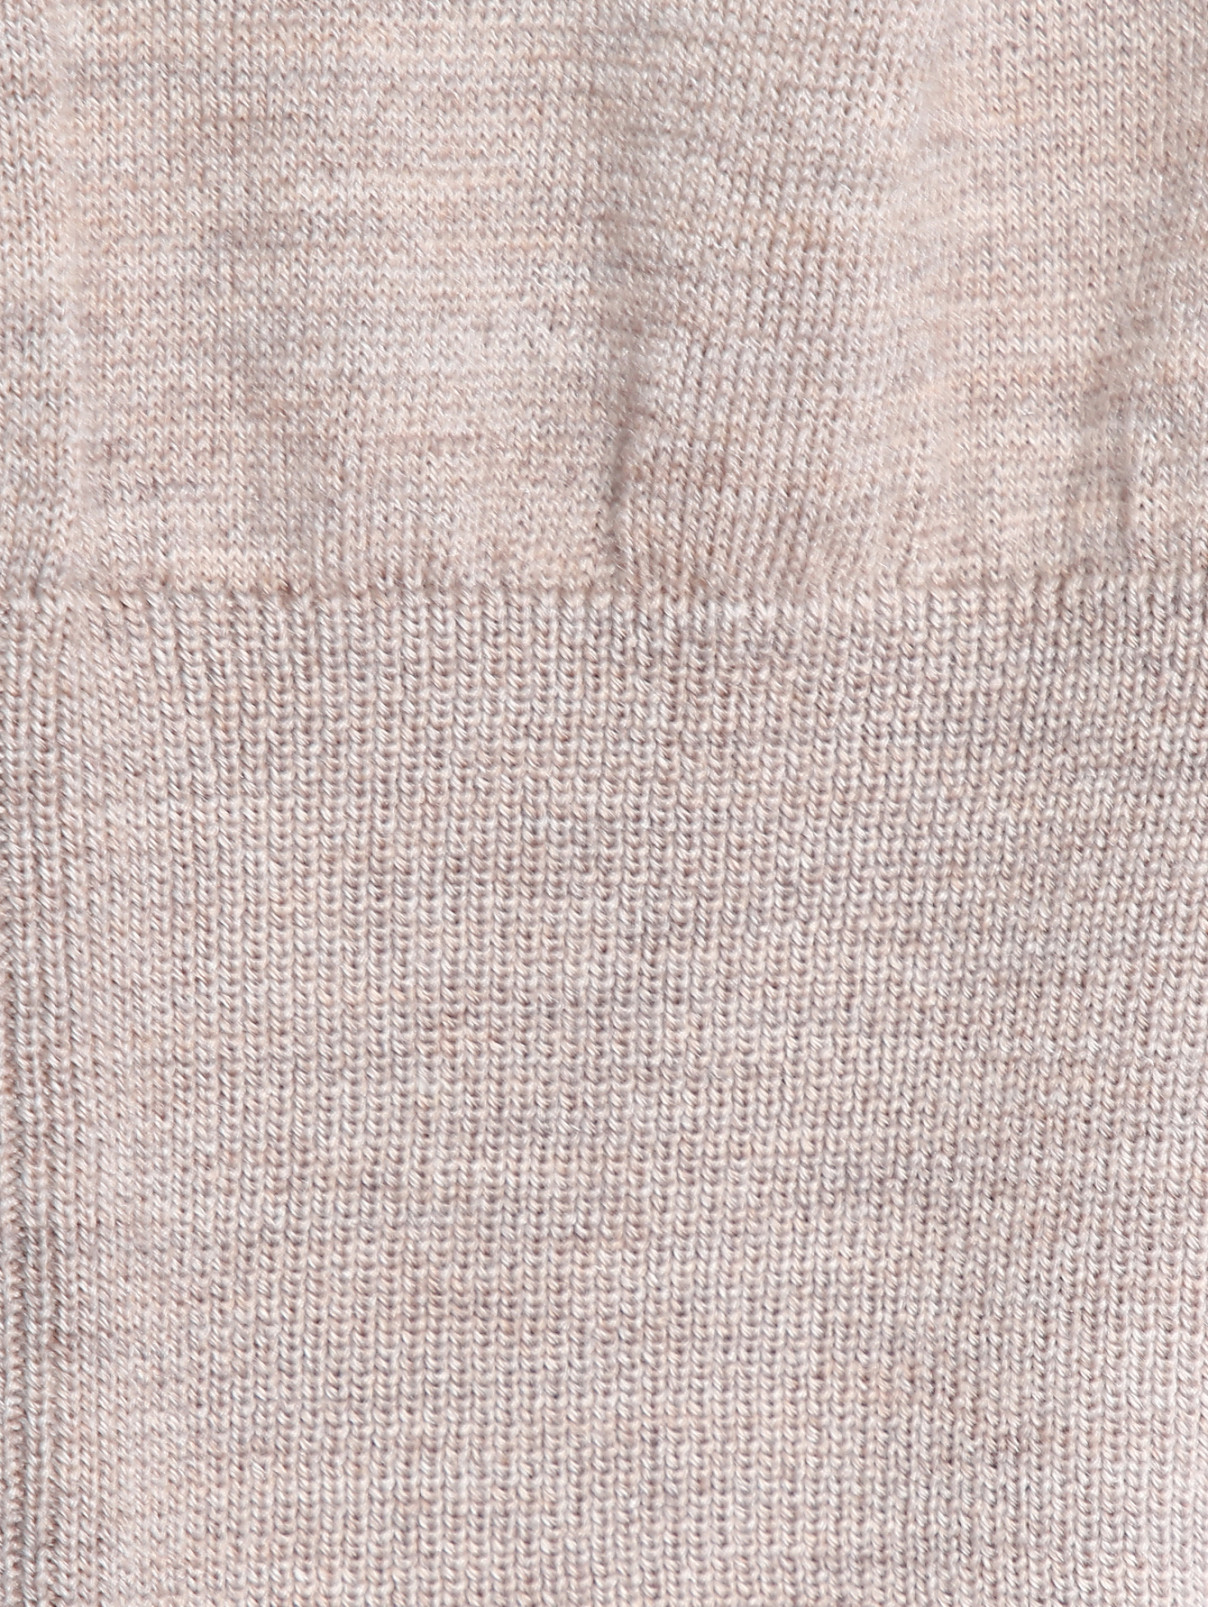 Джемпер из шерсти и шелка с воротом поло Piacenza Cashmere  –  Деталь1  – Цвет:  Бежевый